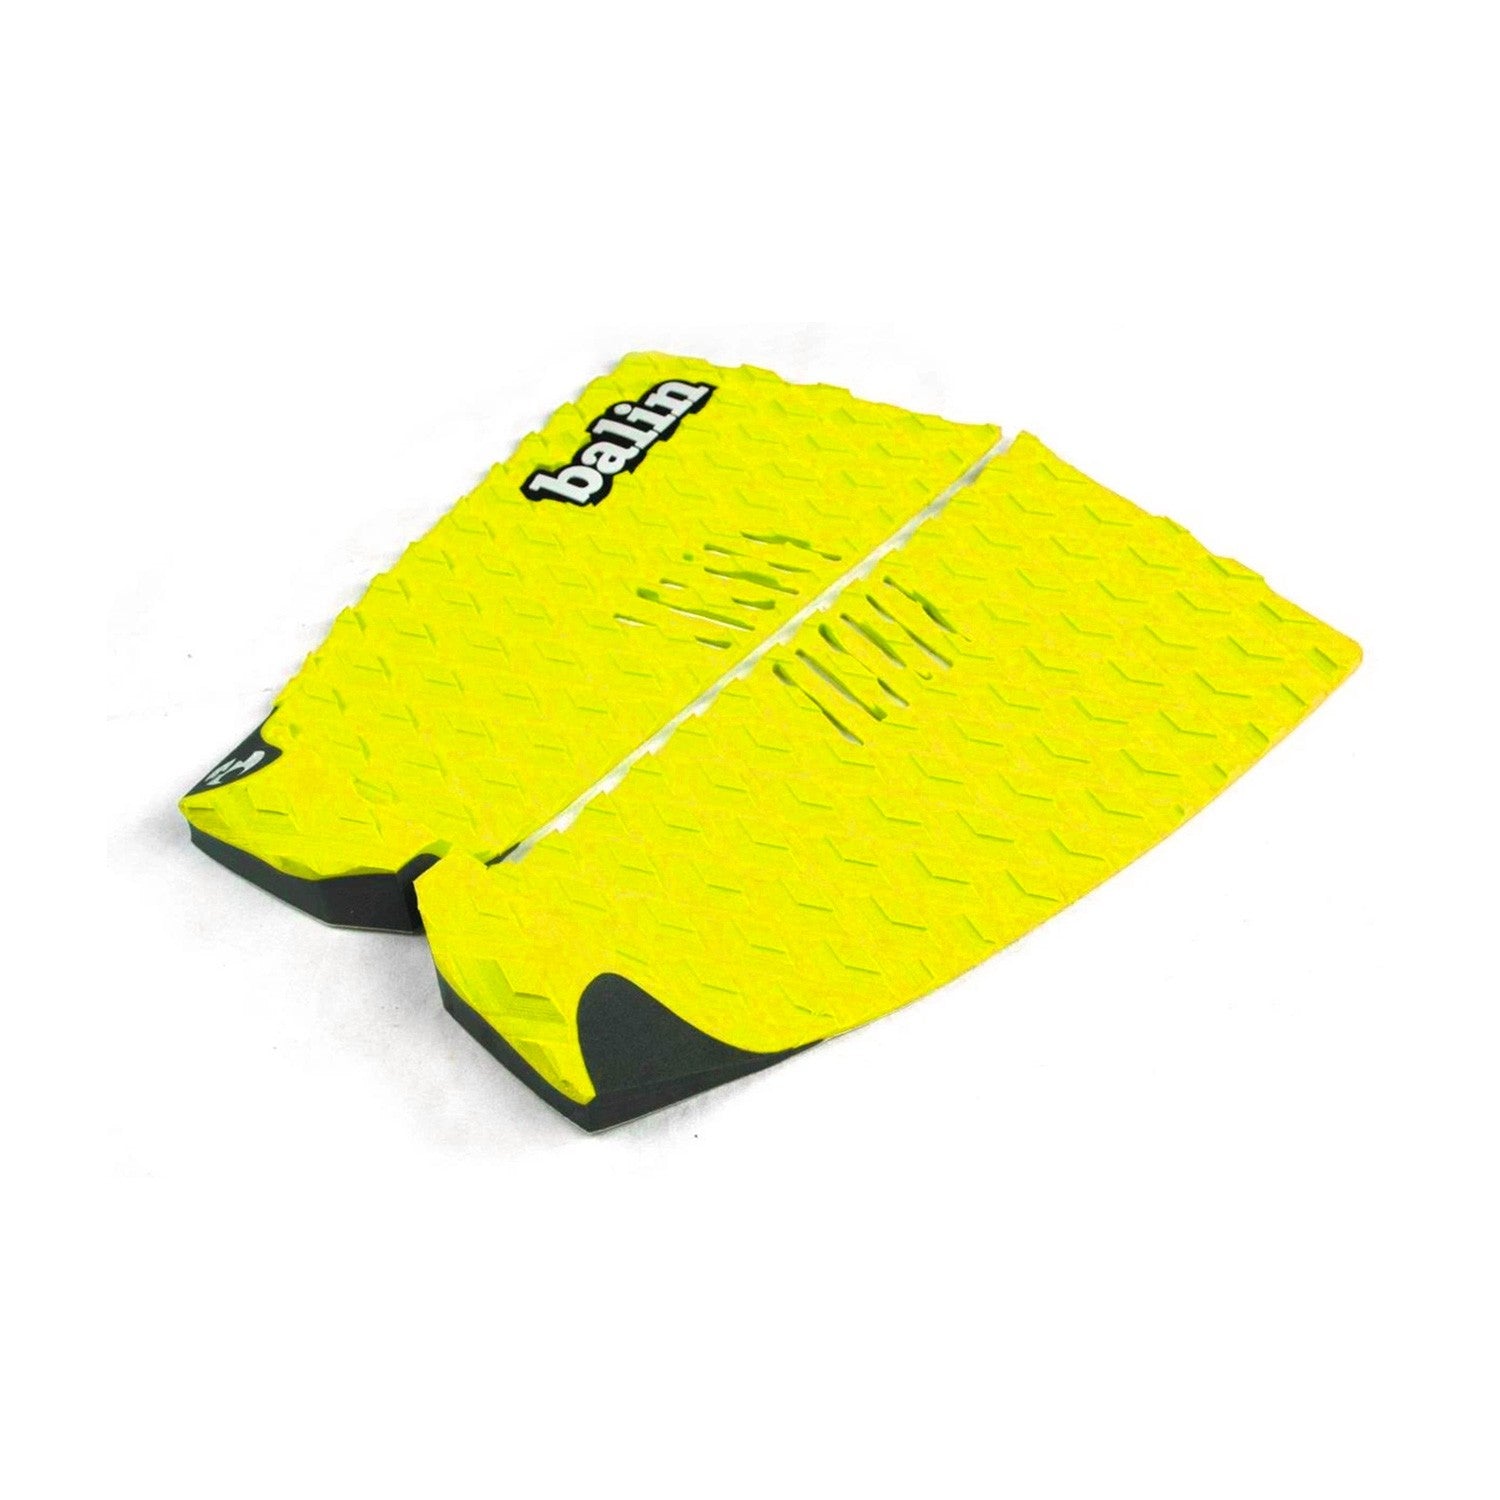 BALIN - Divide Traction Pad Surf - Yellow